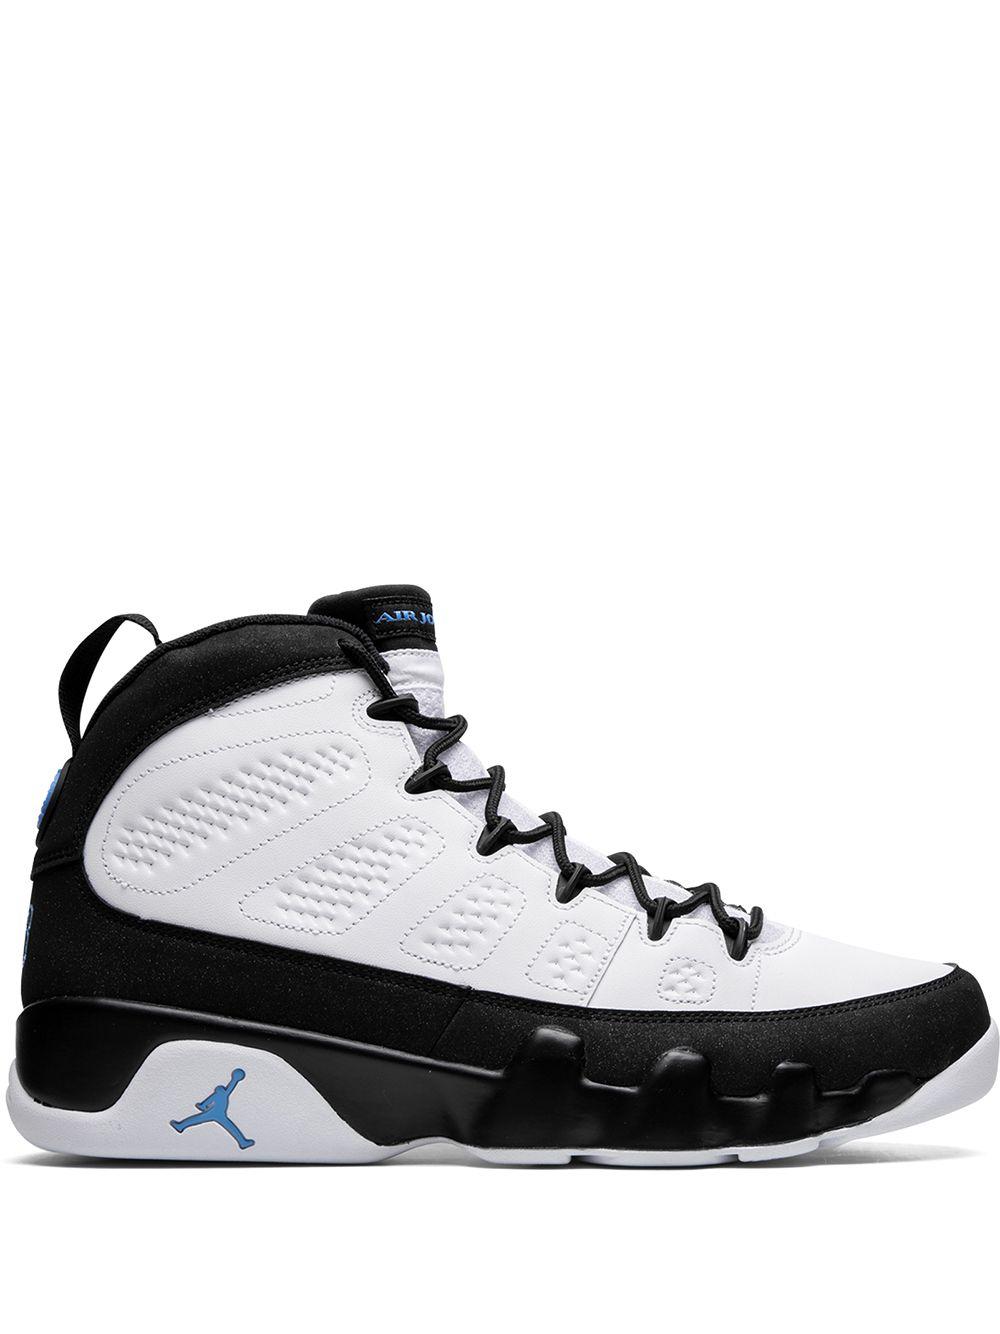 Air Jordan 9 Retro sneakers (CT8019-140 